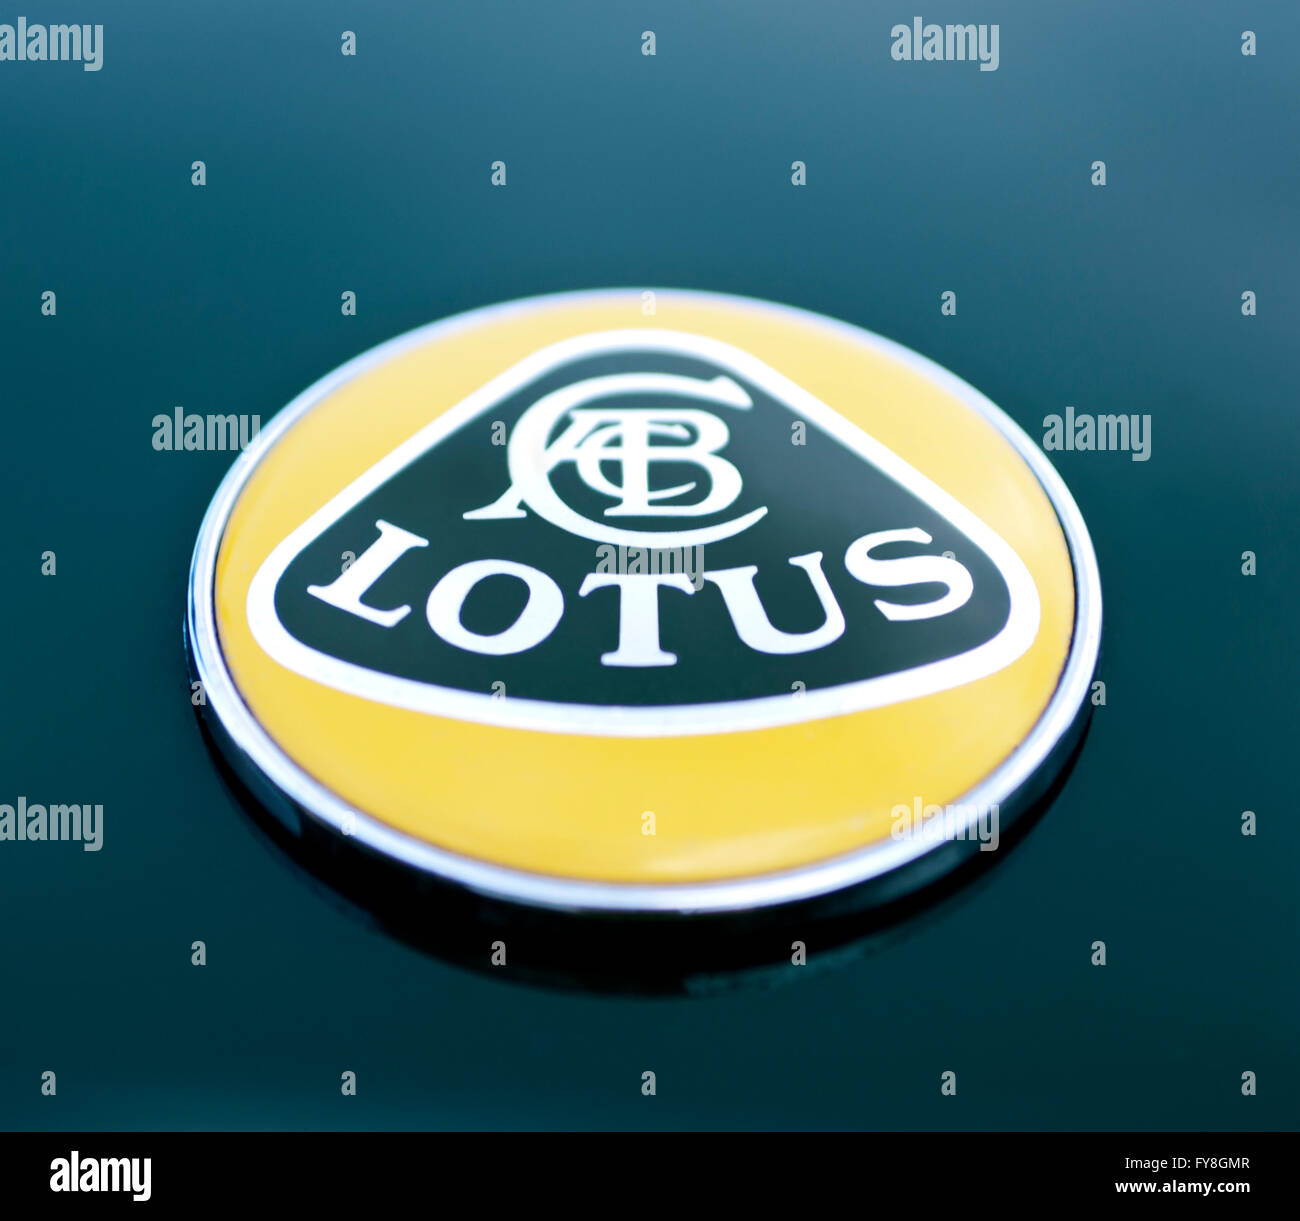 Lotus Logo on hood of car Stock Photo